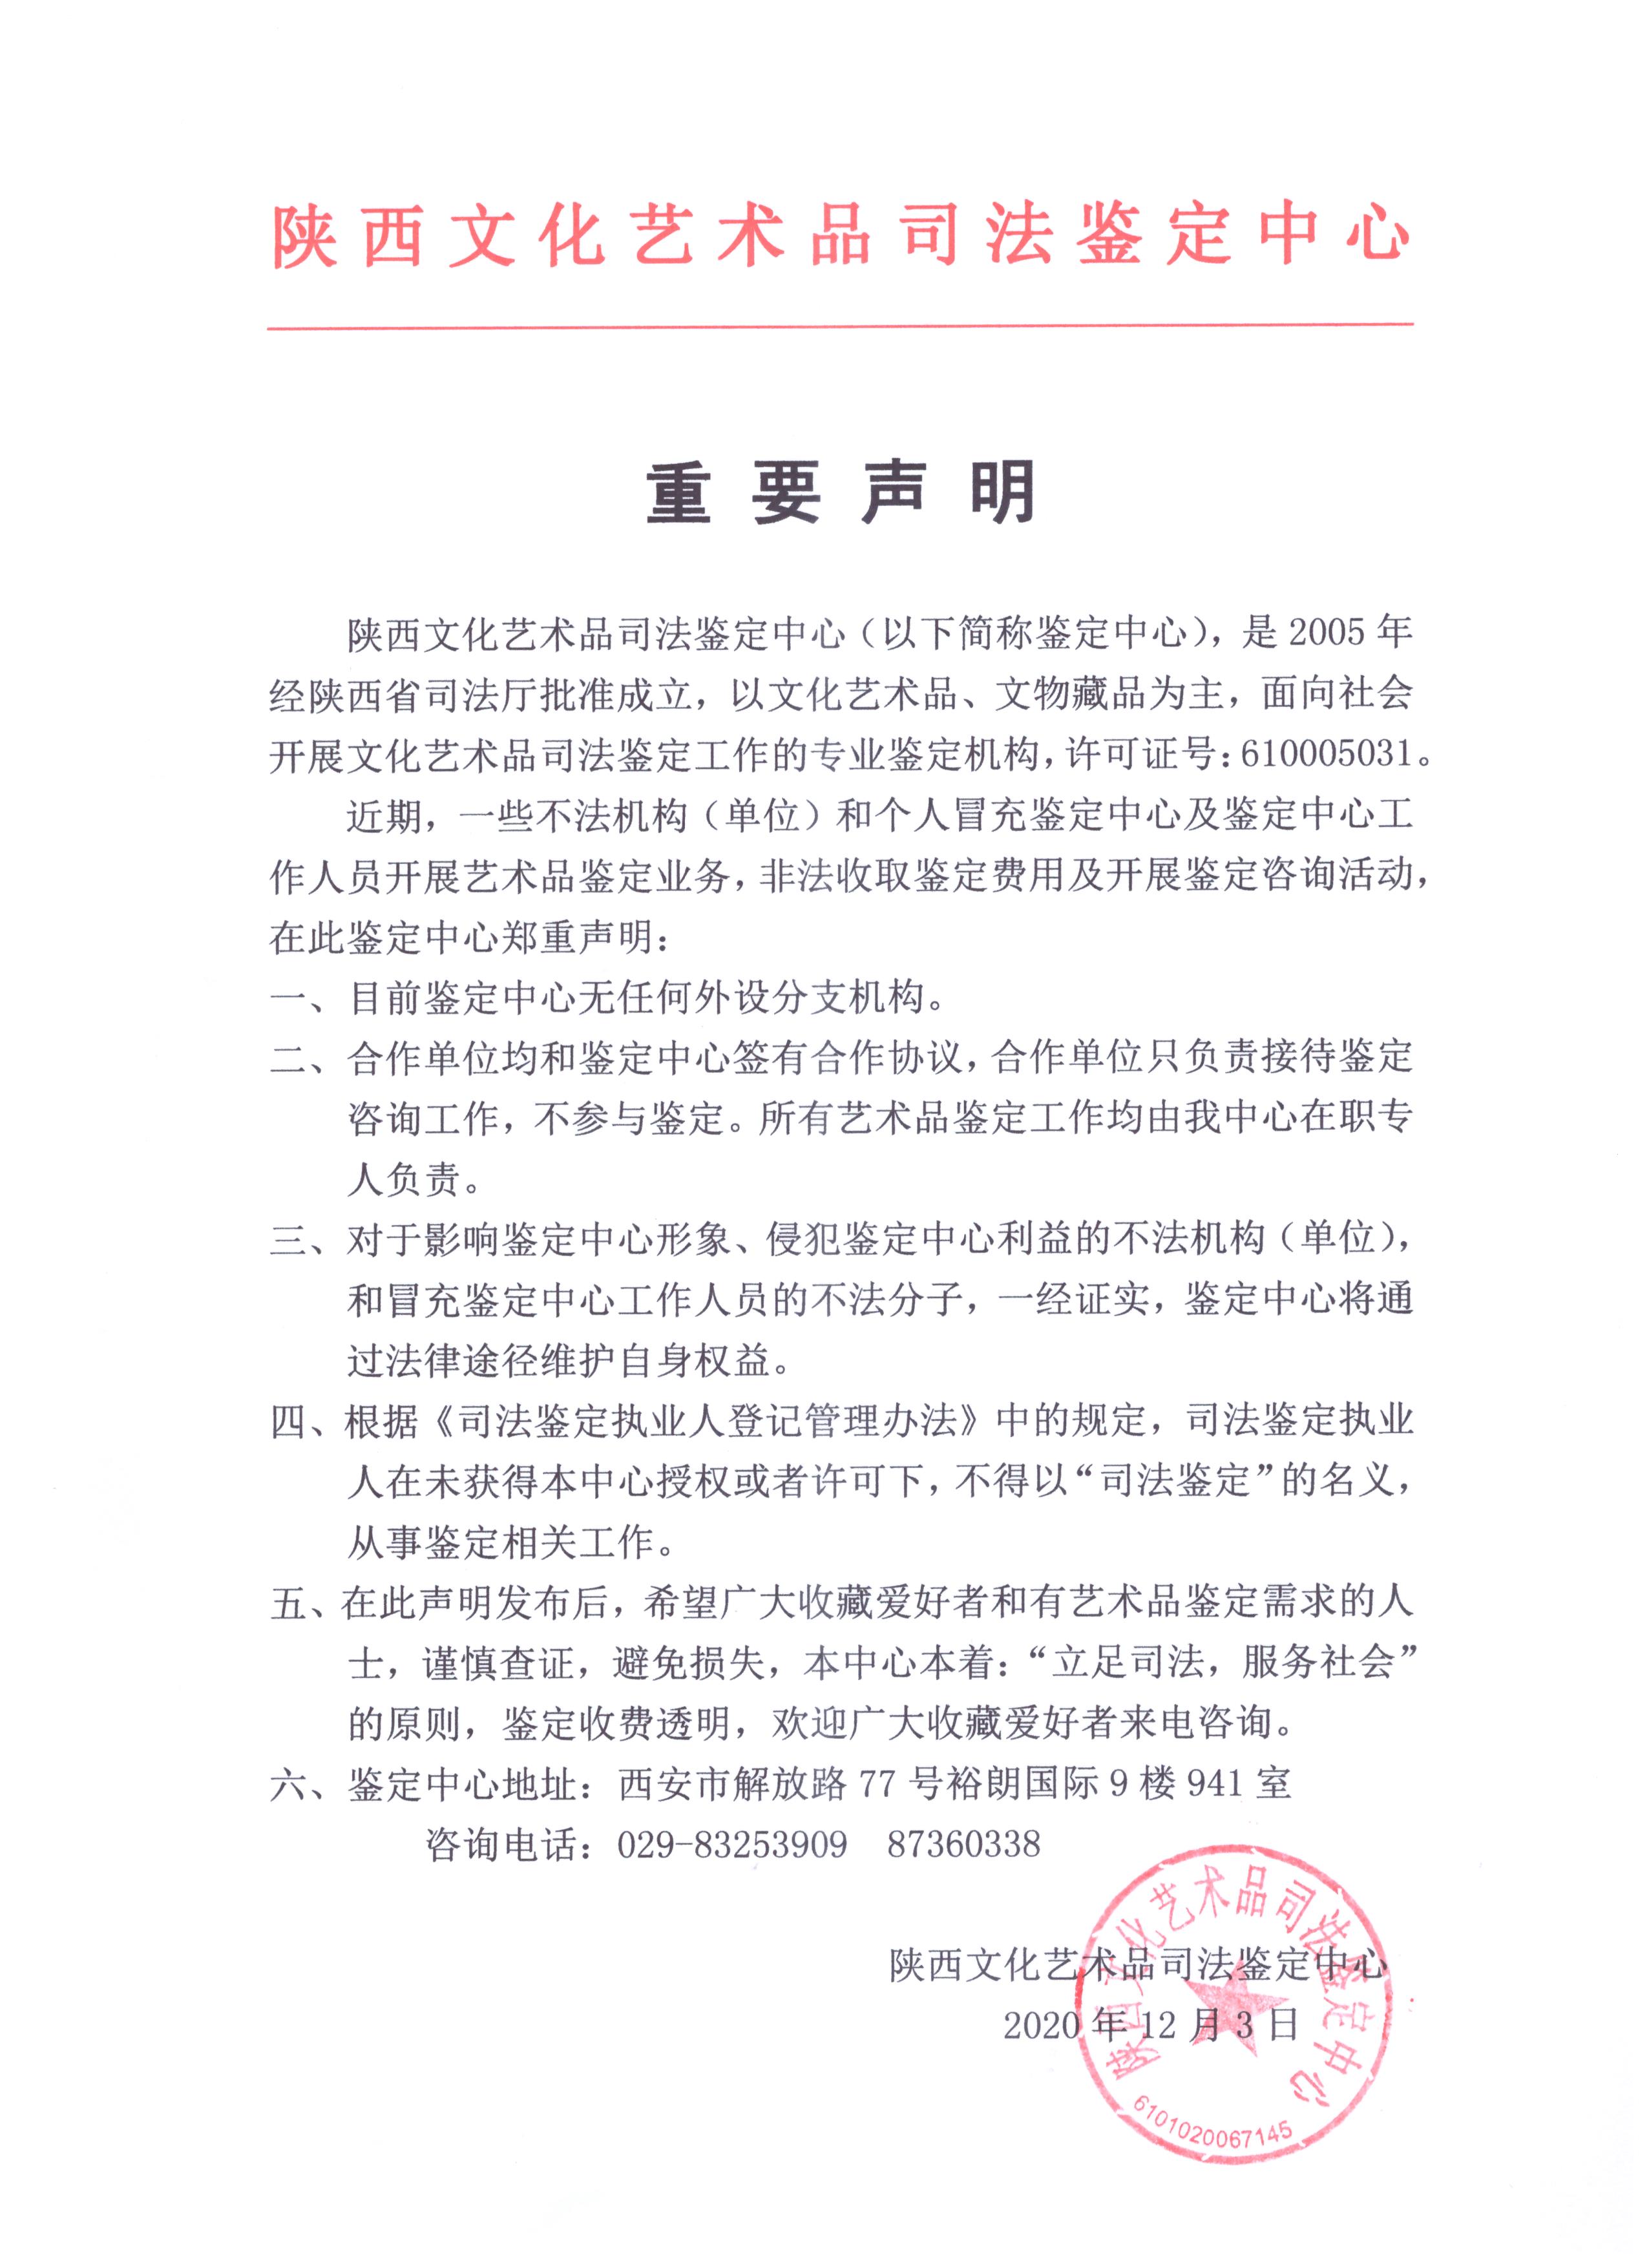 2020年12月3日陕西文化艺术品司法鉴定中心声明